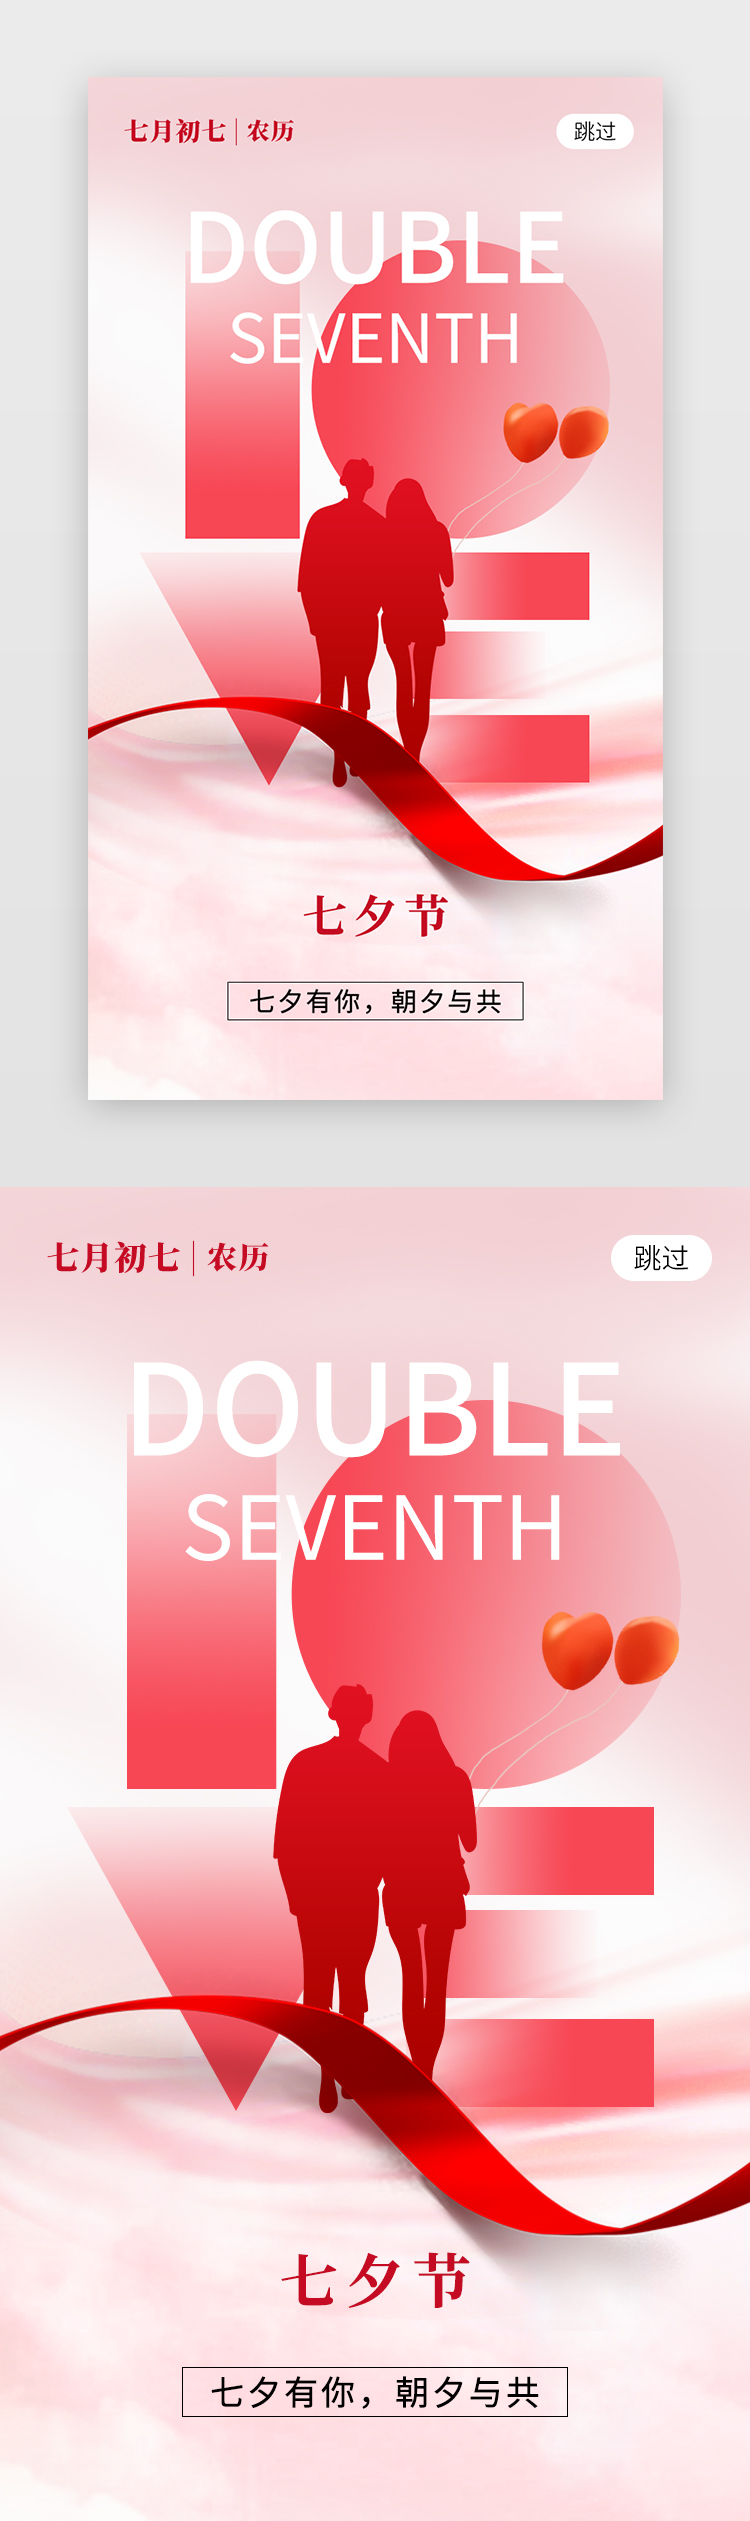 甜蜜七夕节app闪屏创意粉红色情侣图片